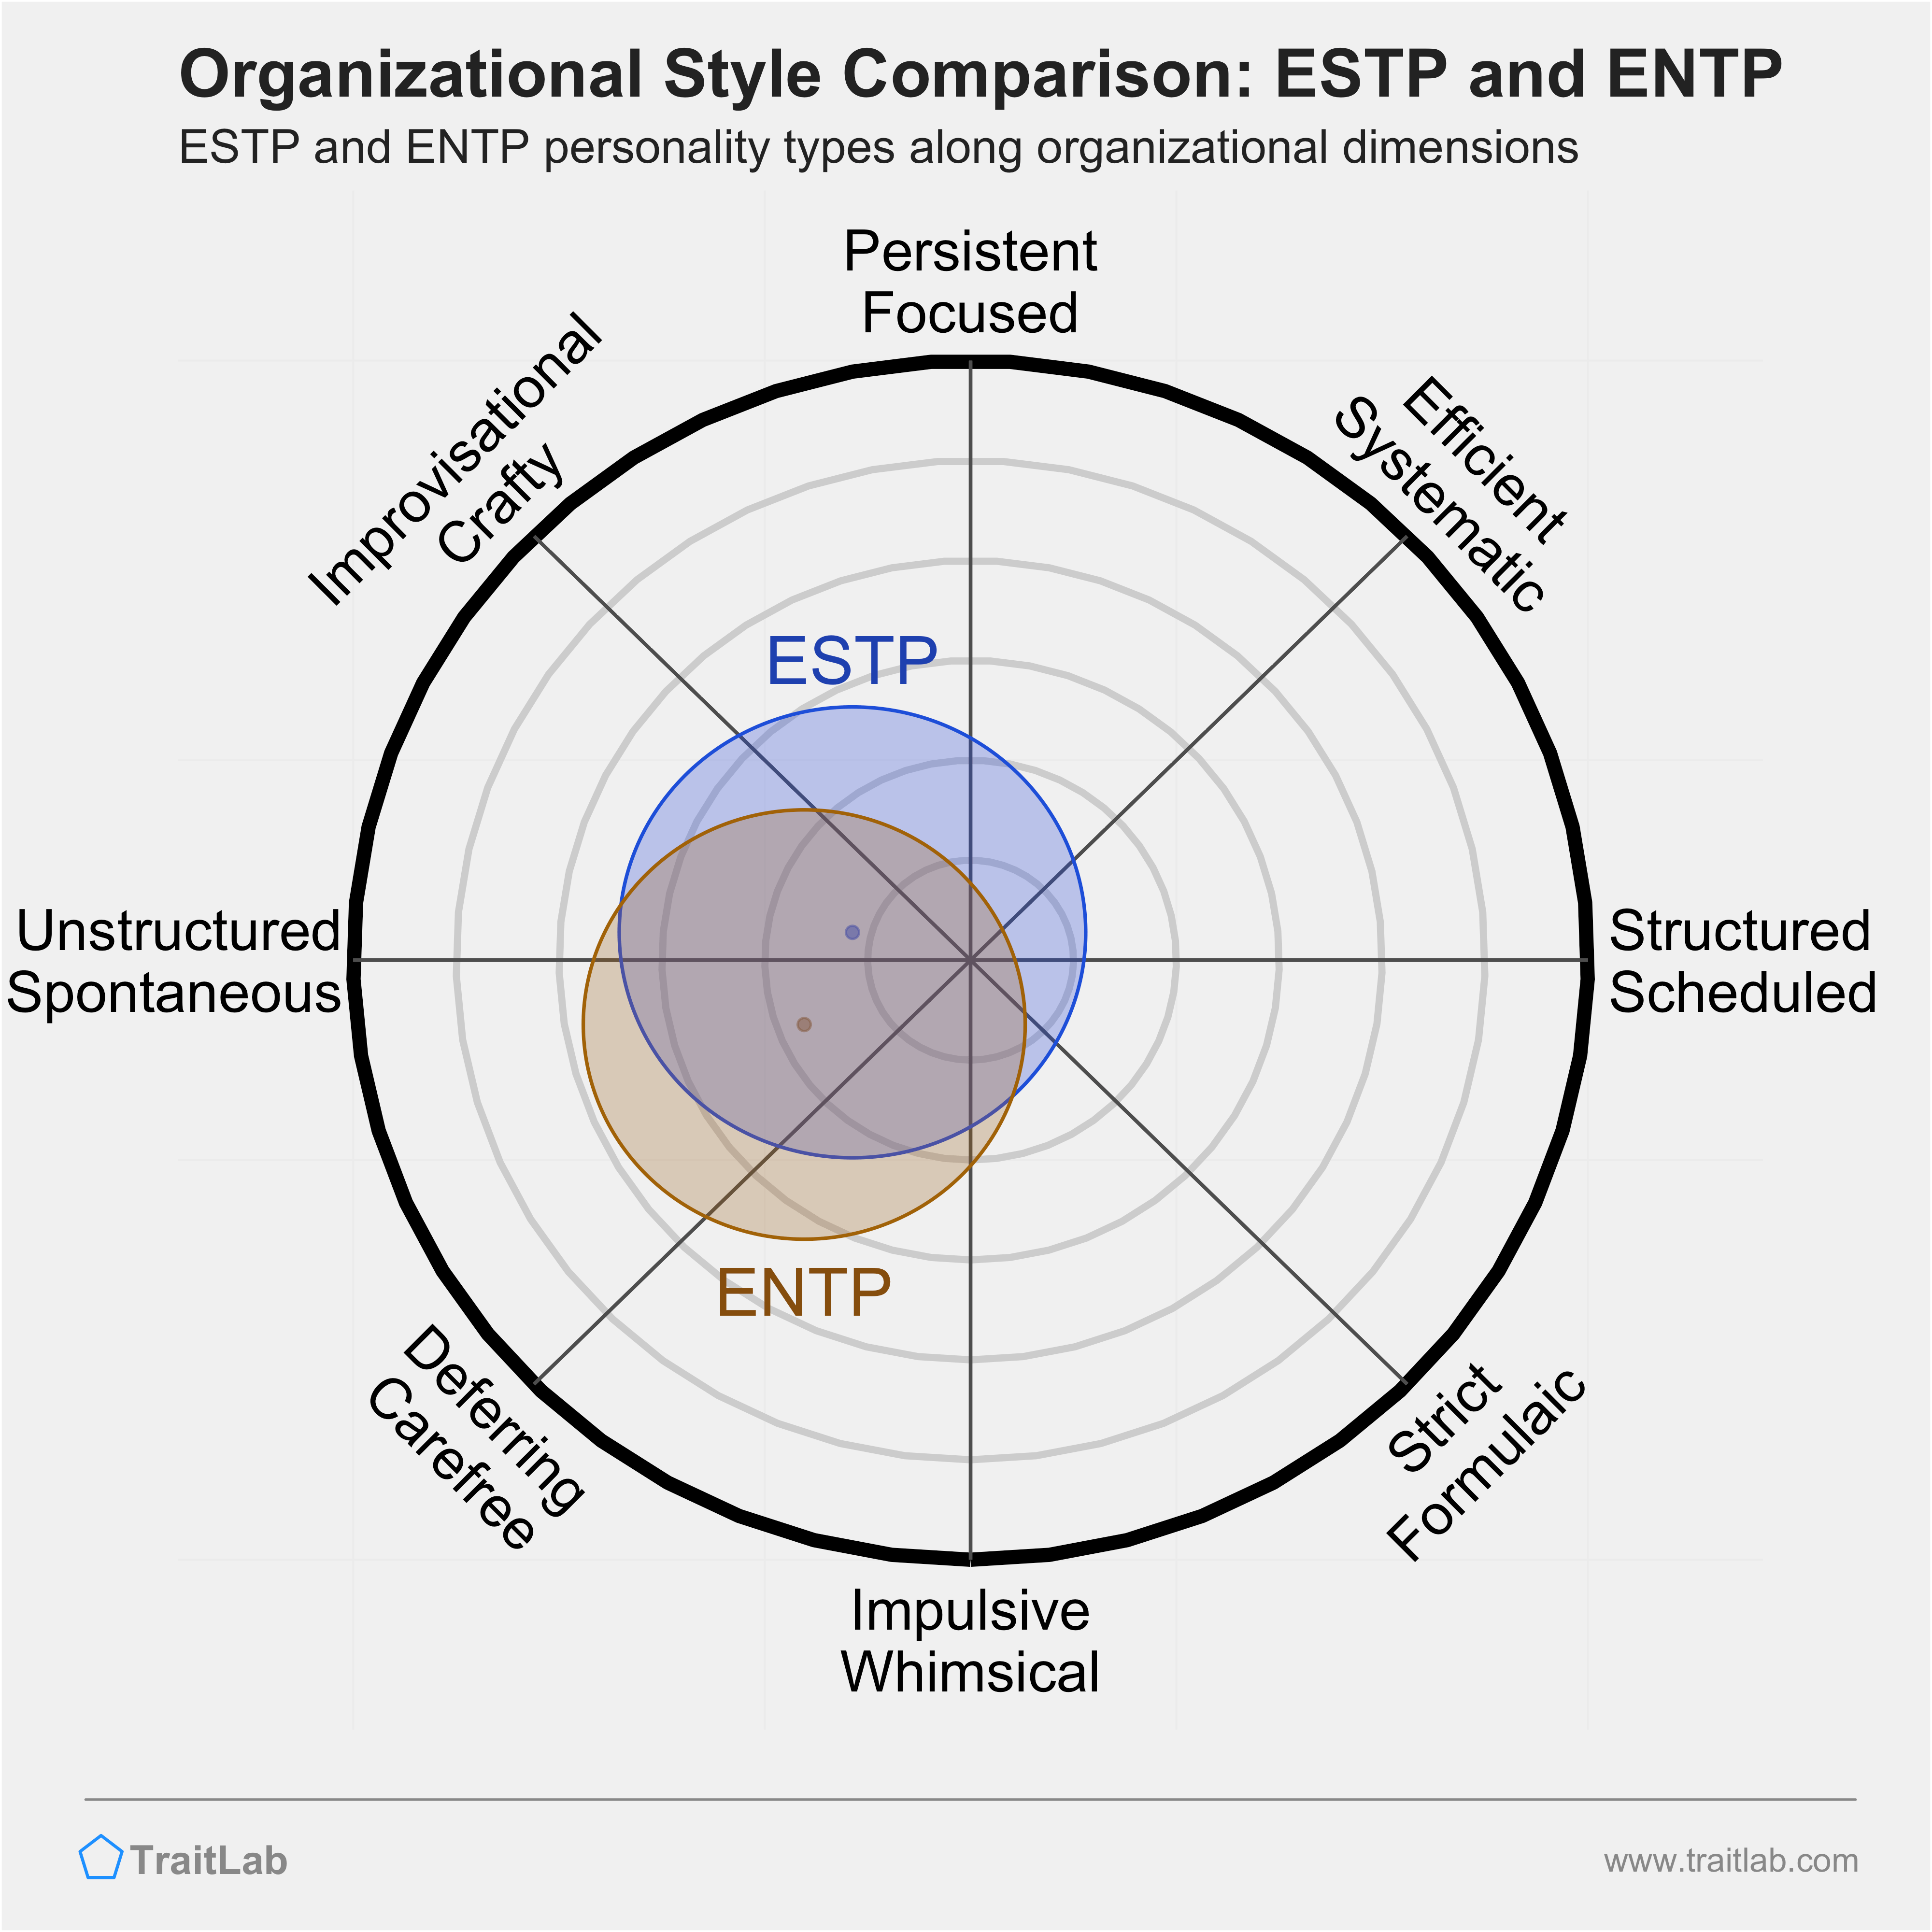 ESTP and ENTP comparison across organizational dimensions